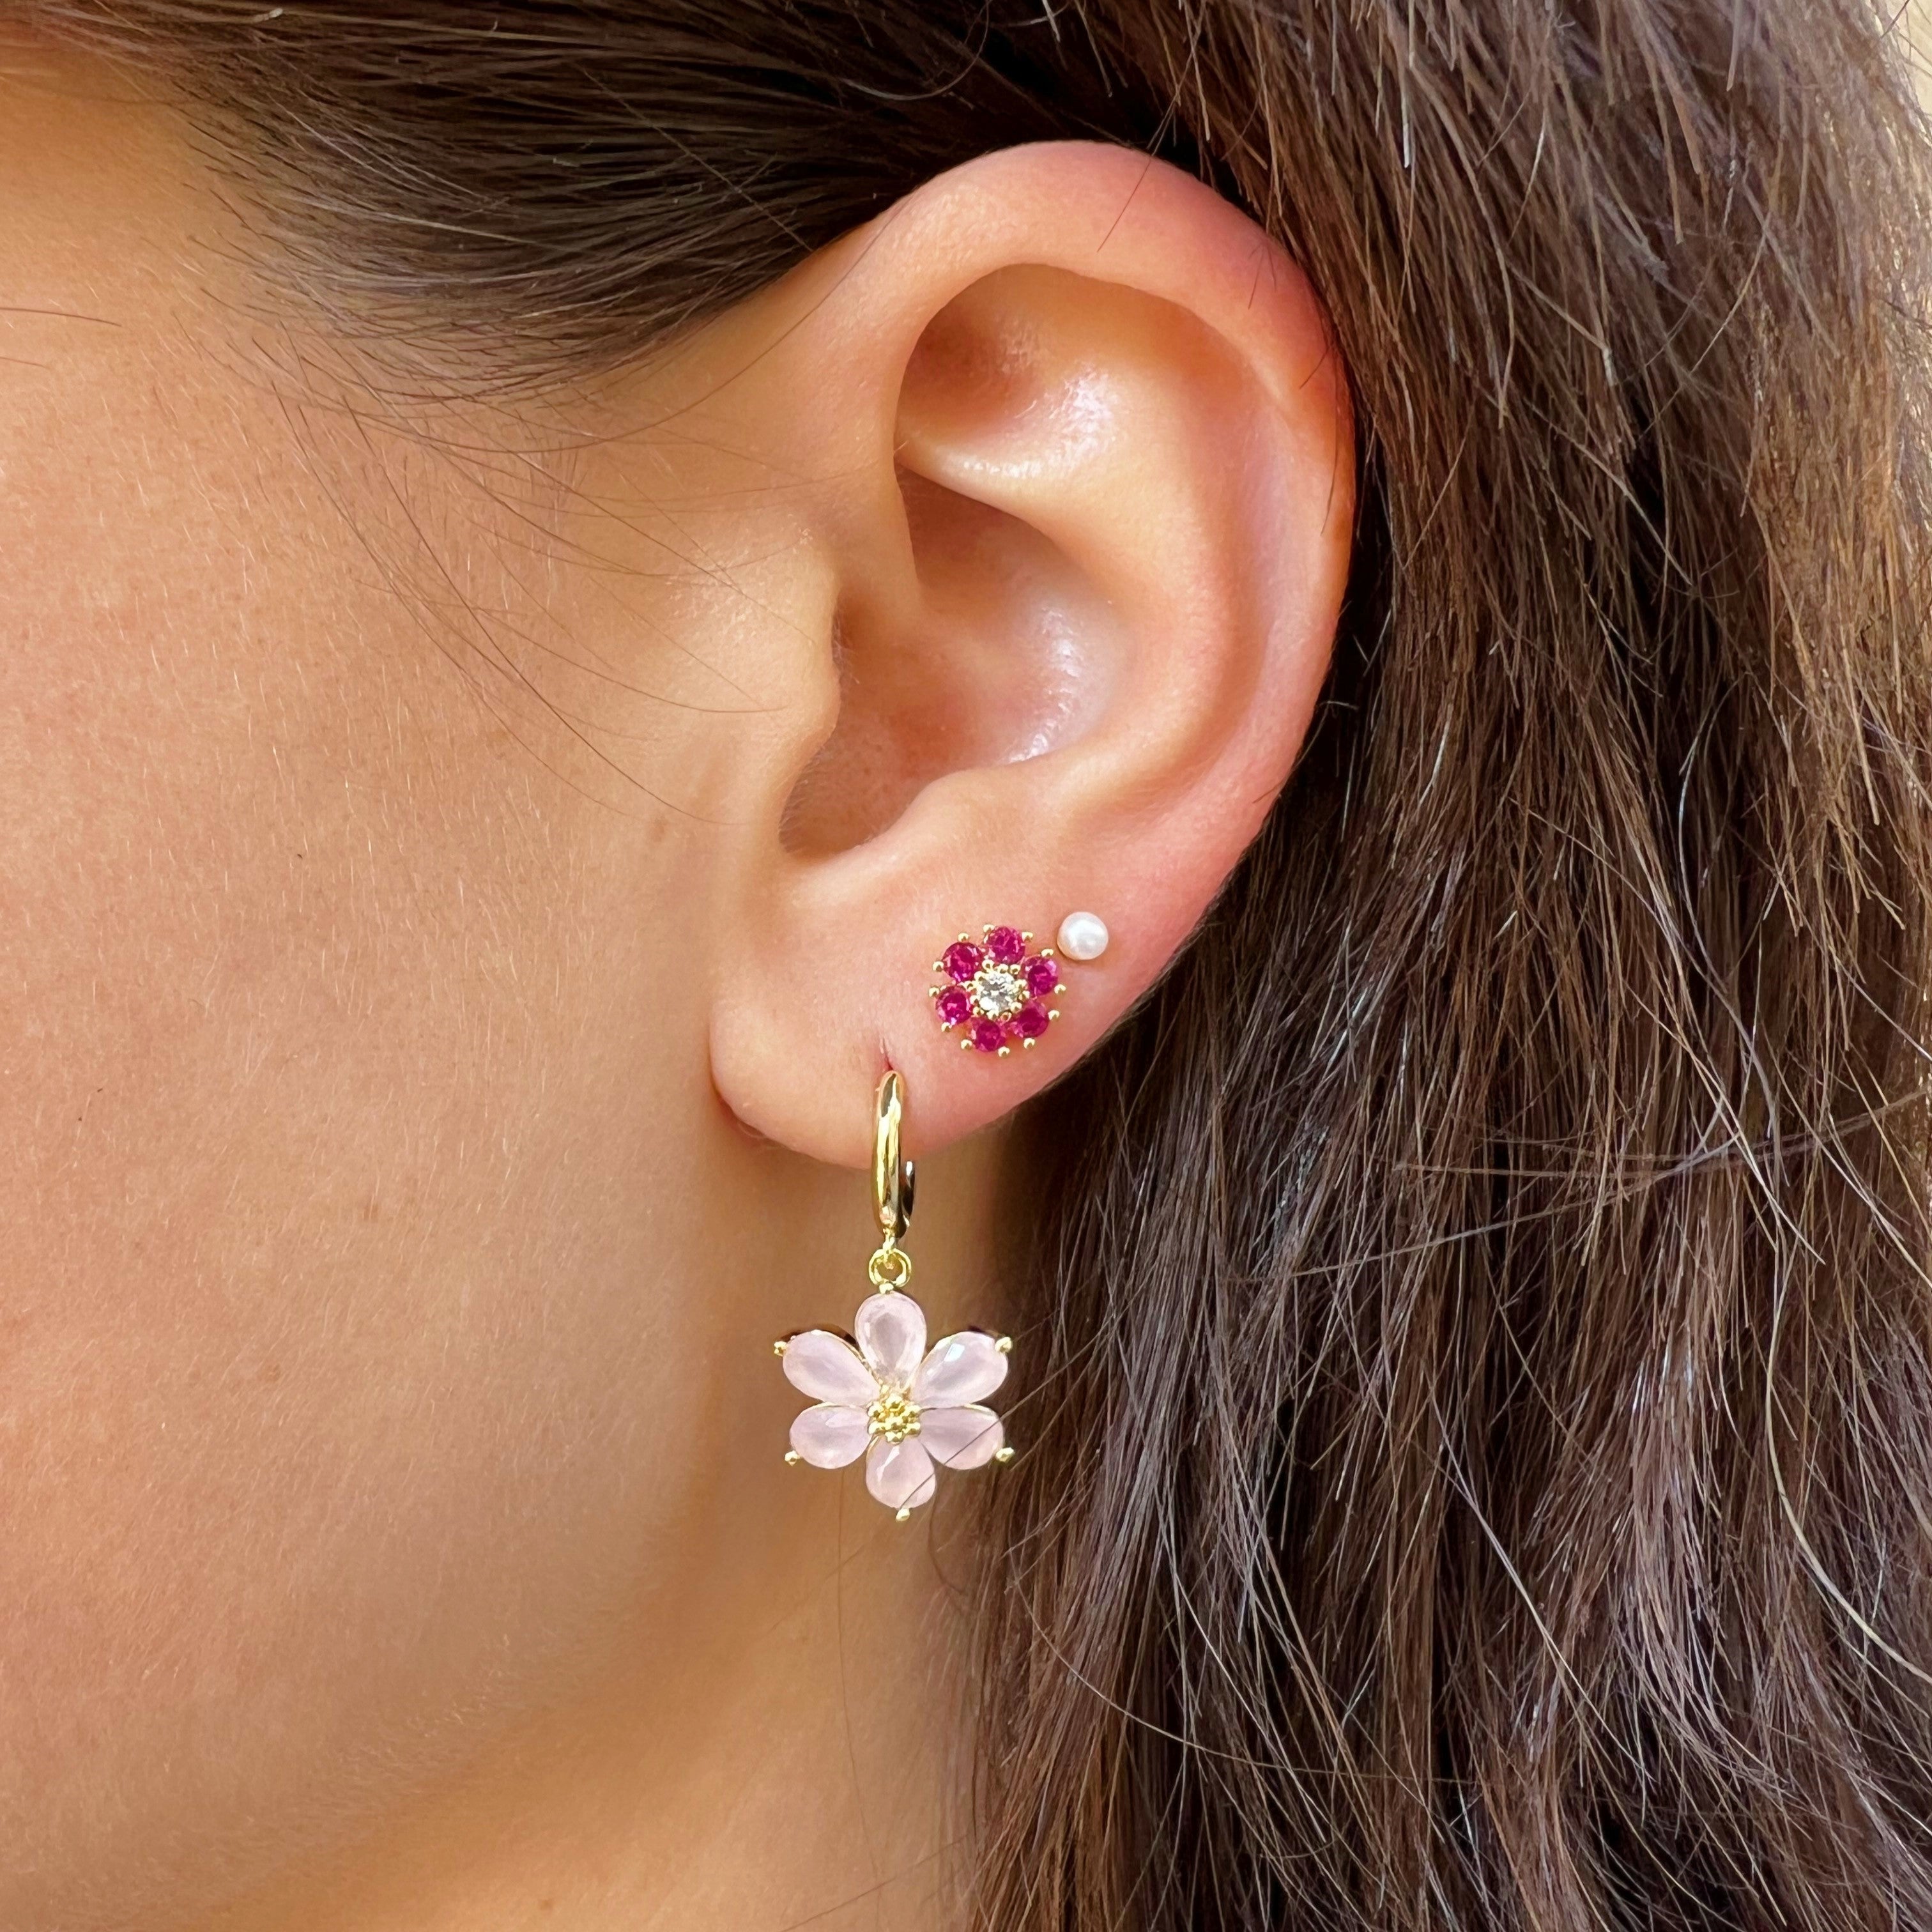 Earrings shining flower pink